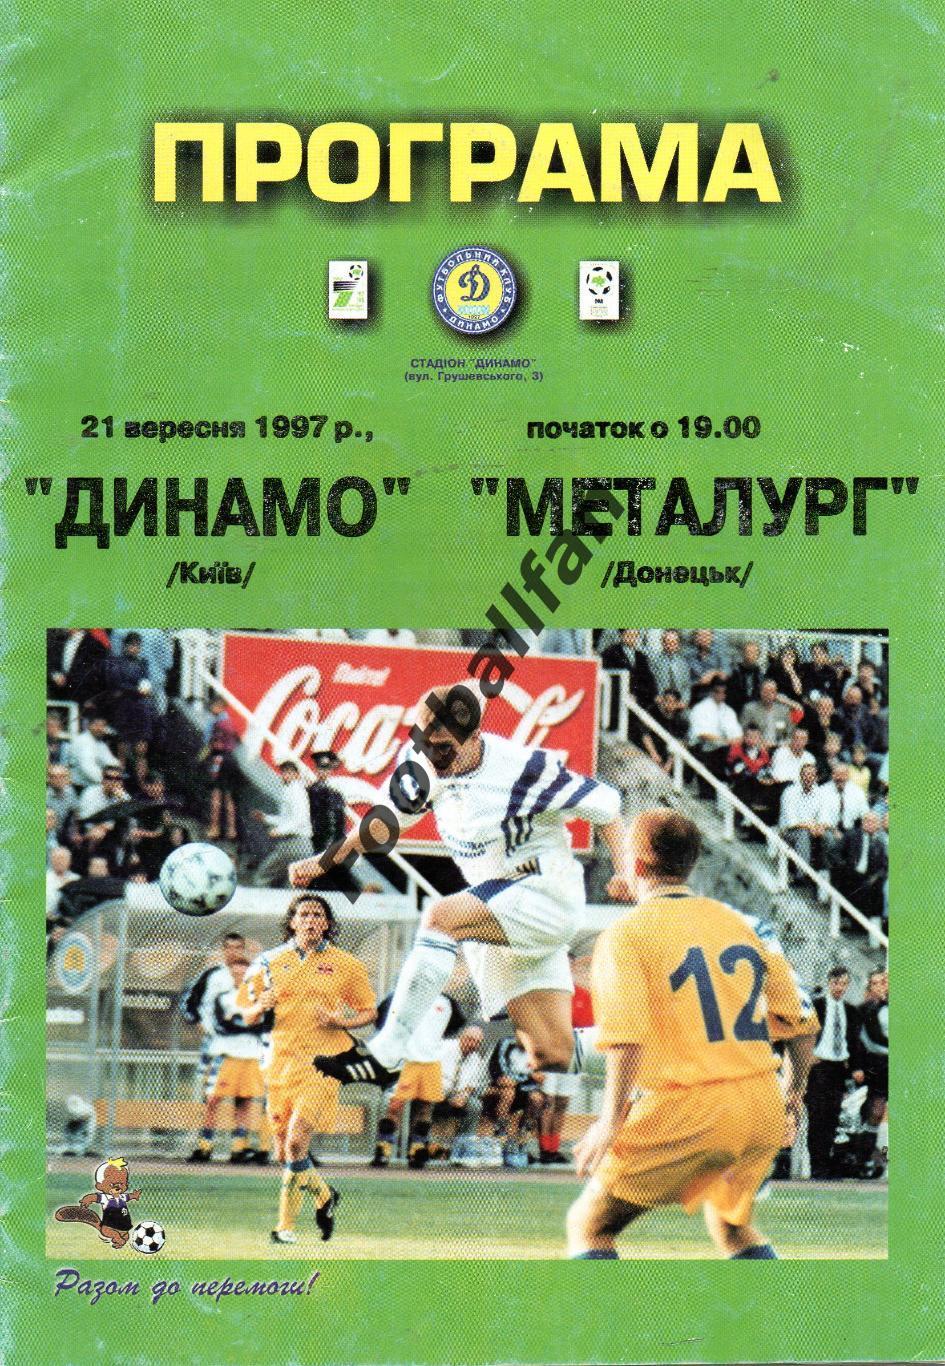 Динамо Киев - Металлург Донецк 21.09.1997